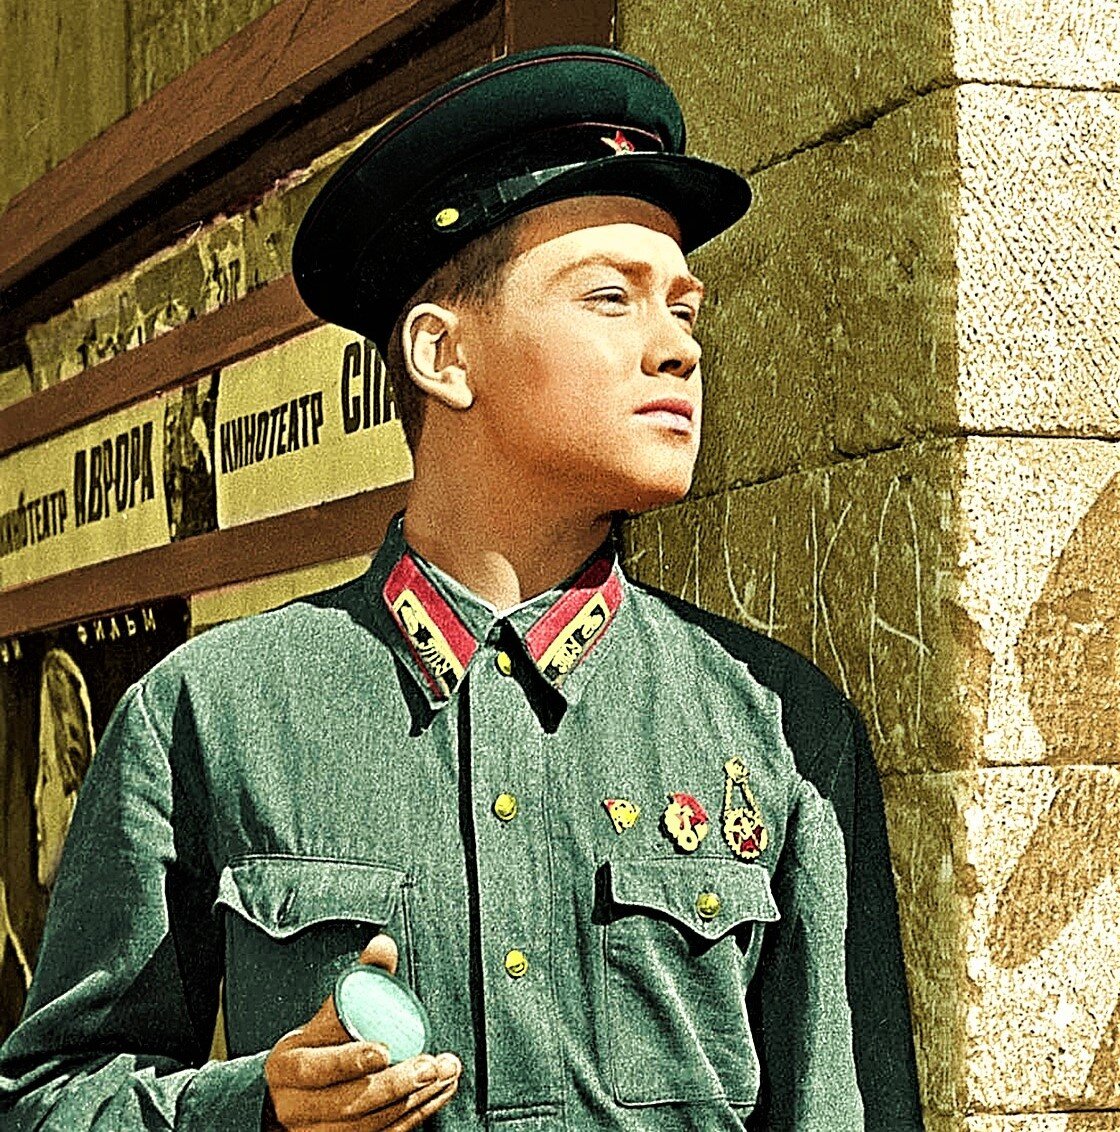 Фото из фильма офицеры цветные